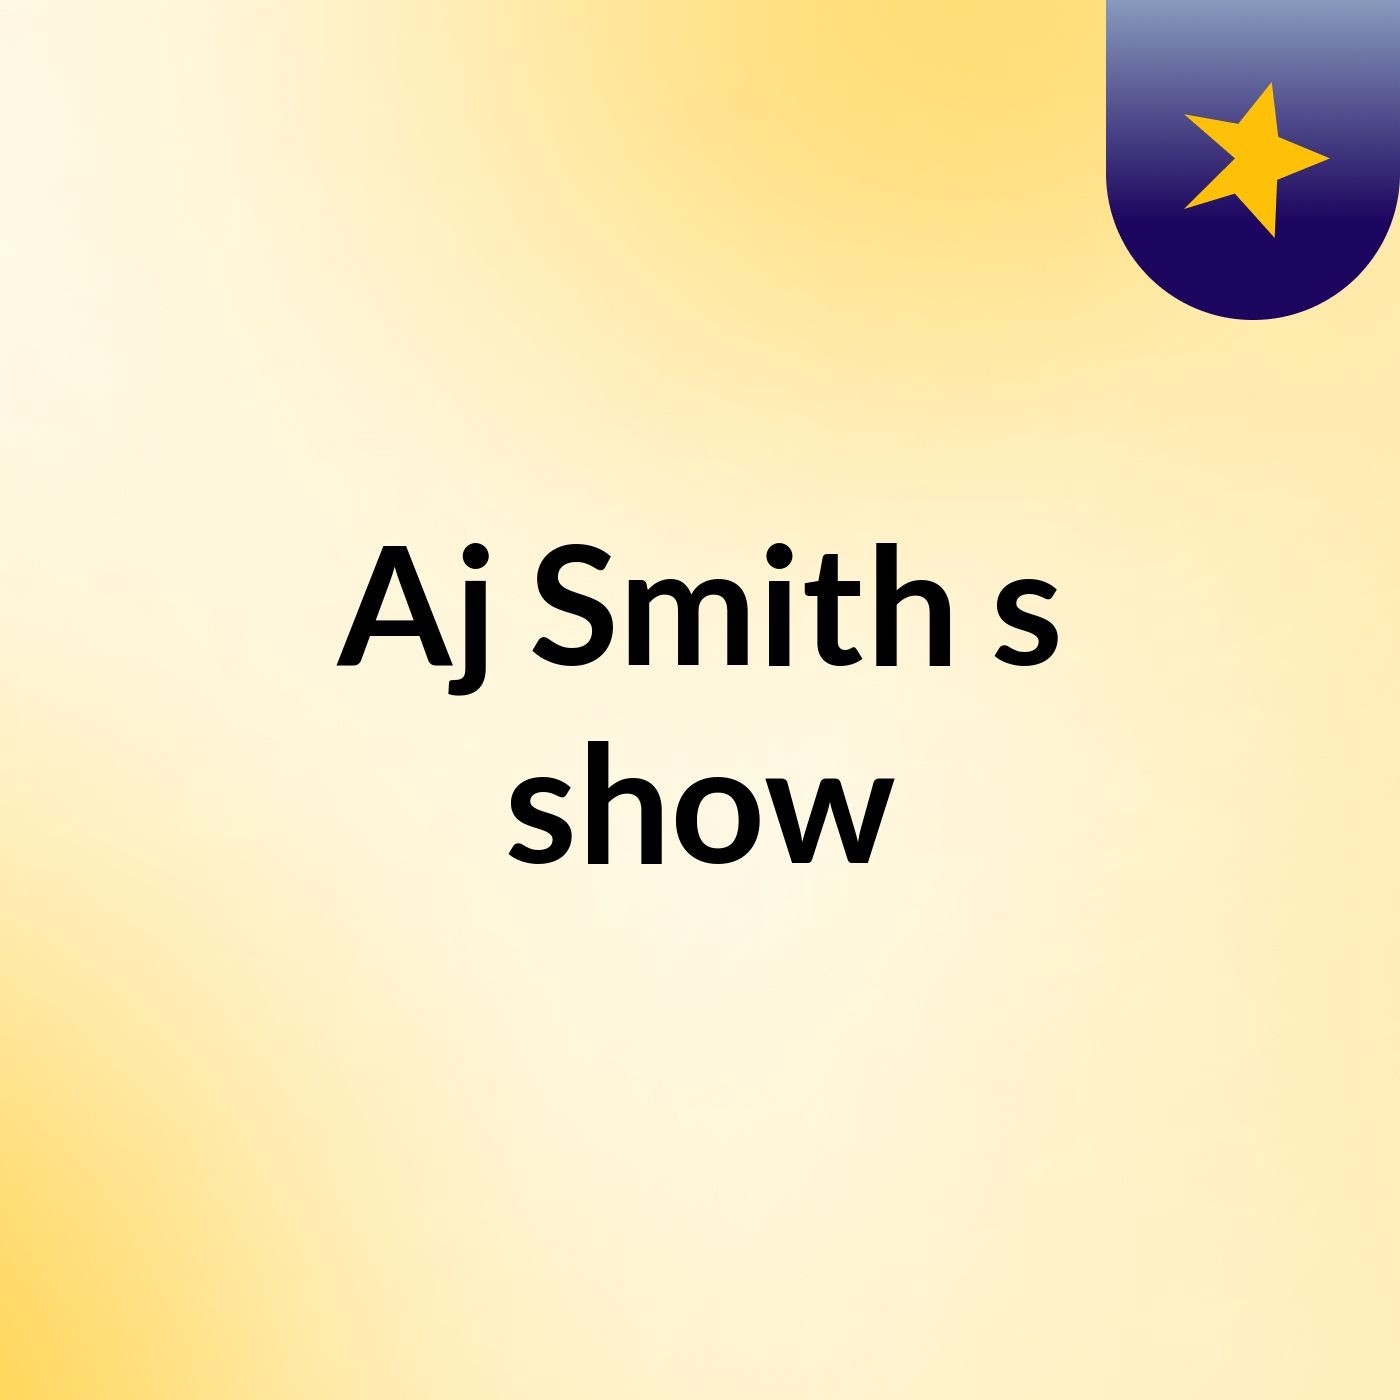 Episode 13 - Aj Smith's show